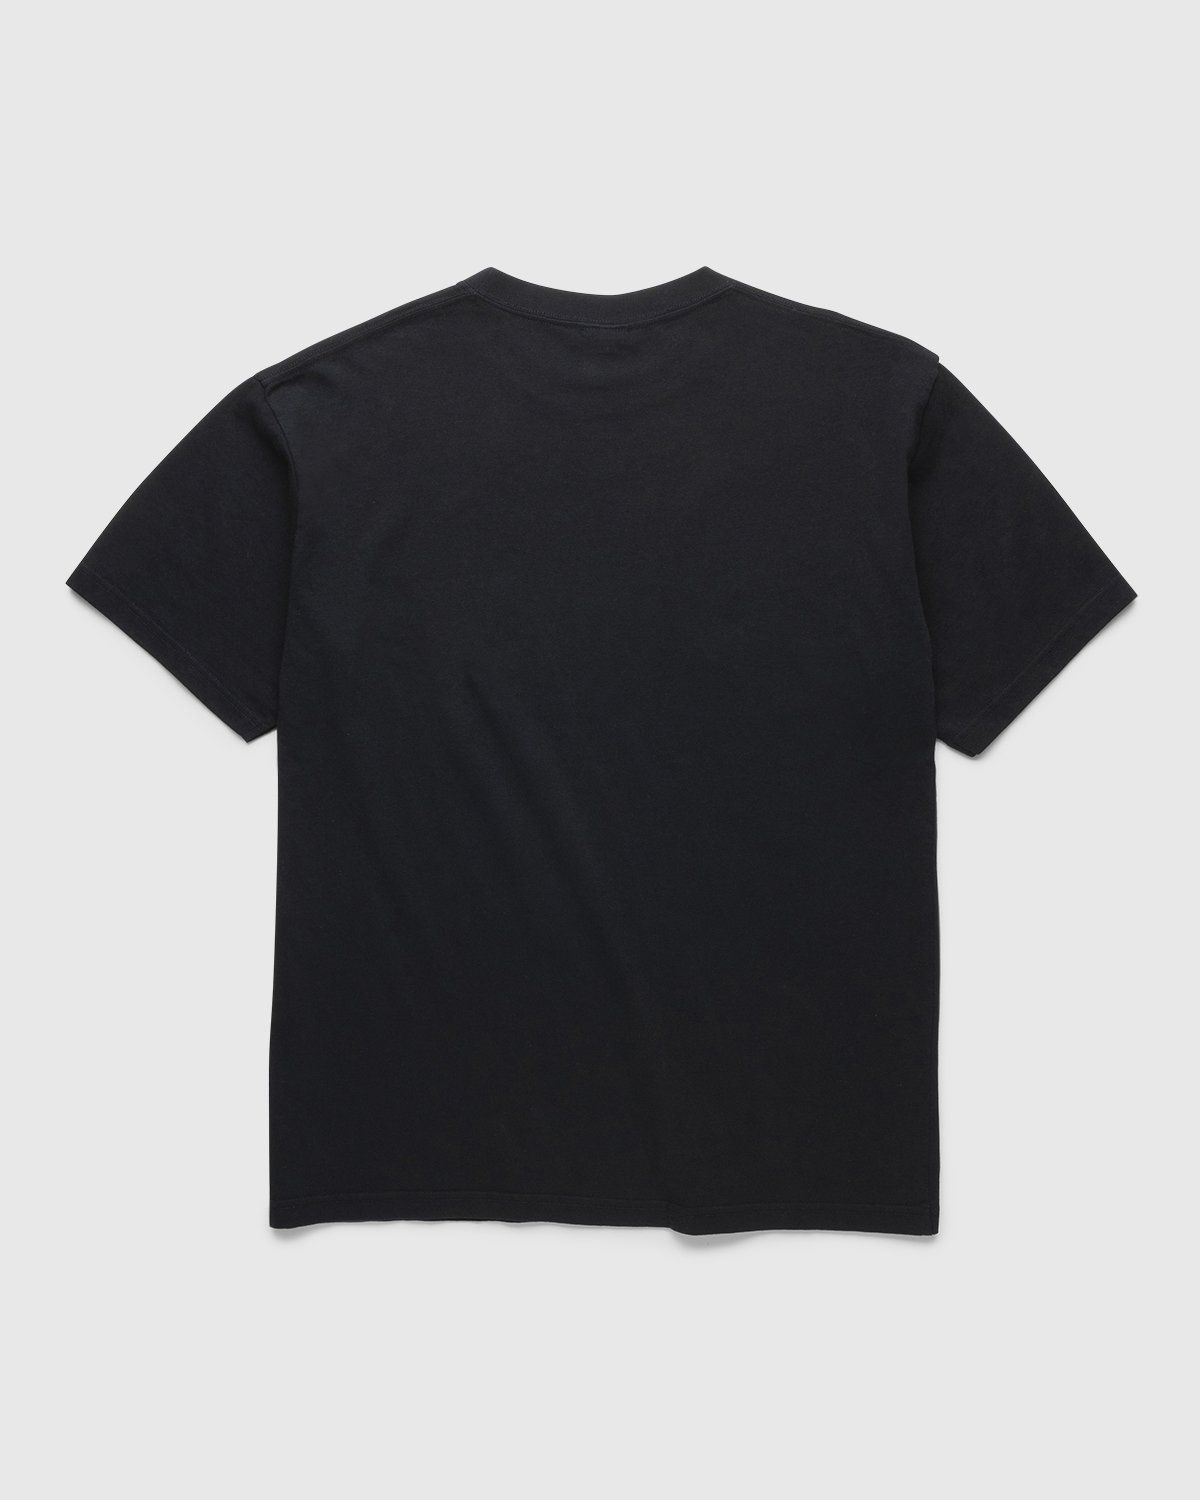 BRAUN x Highsnobiety – TP1 T-Shirt Black - T-Shirts - Black - Image 2